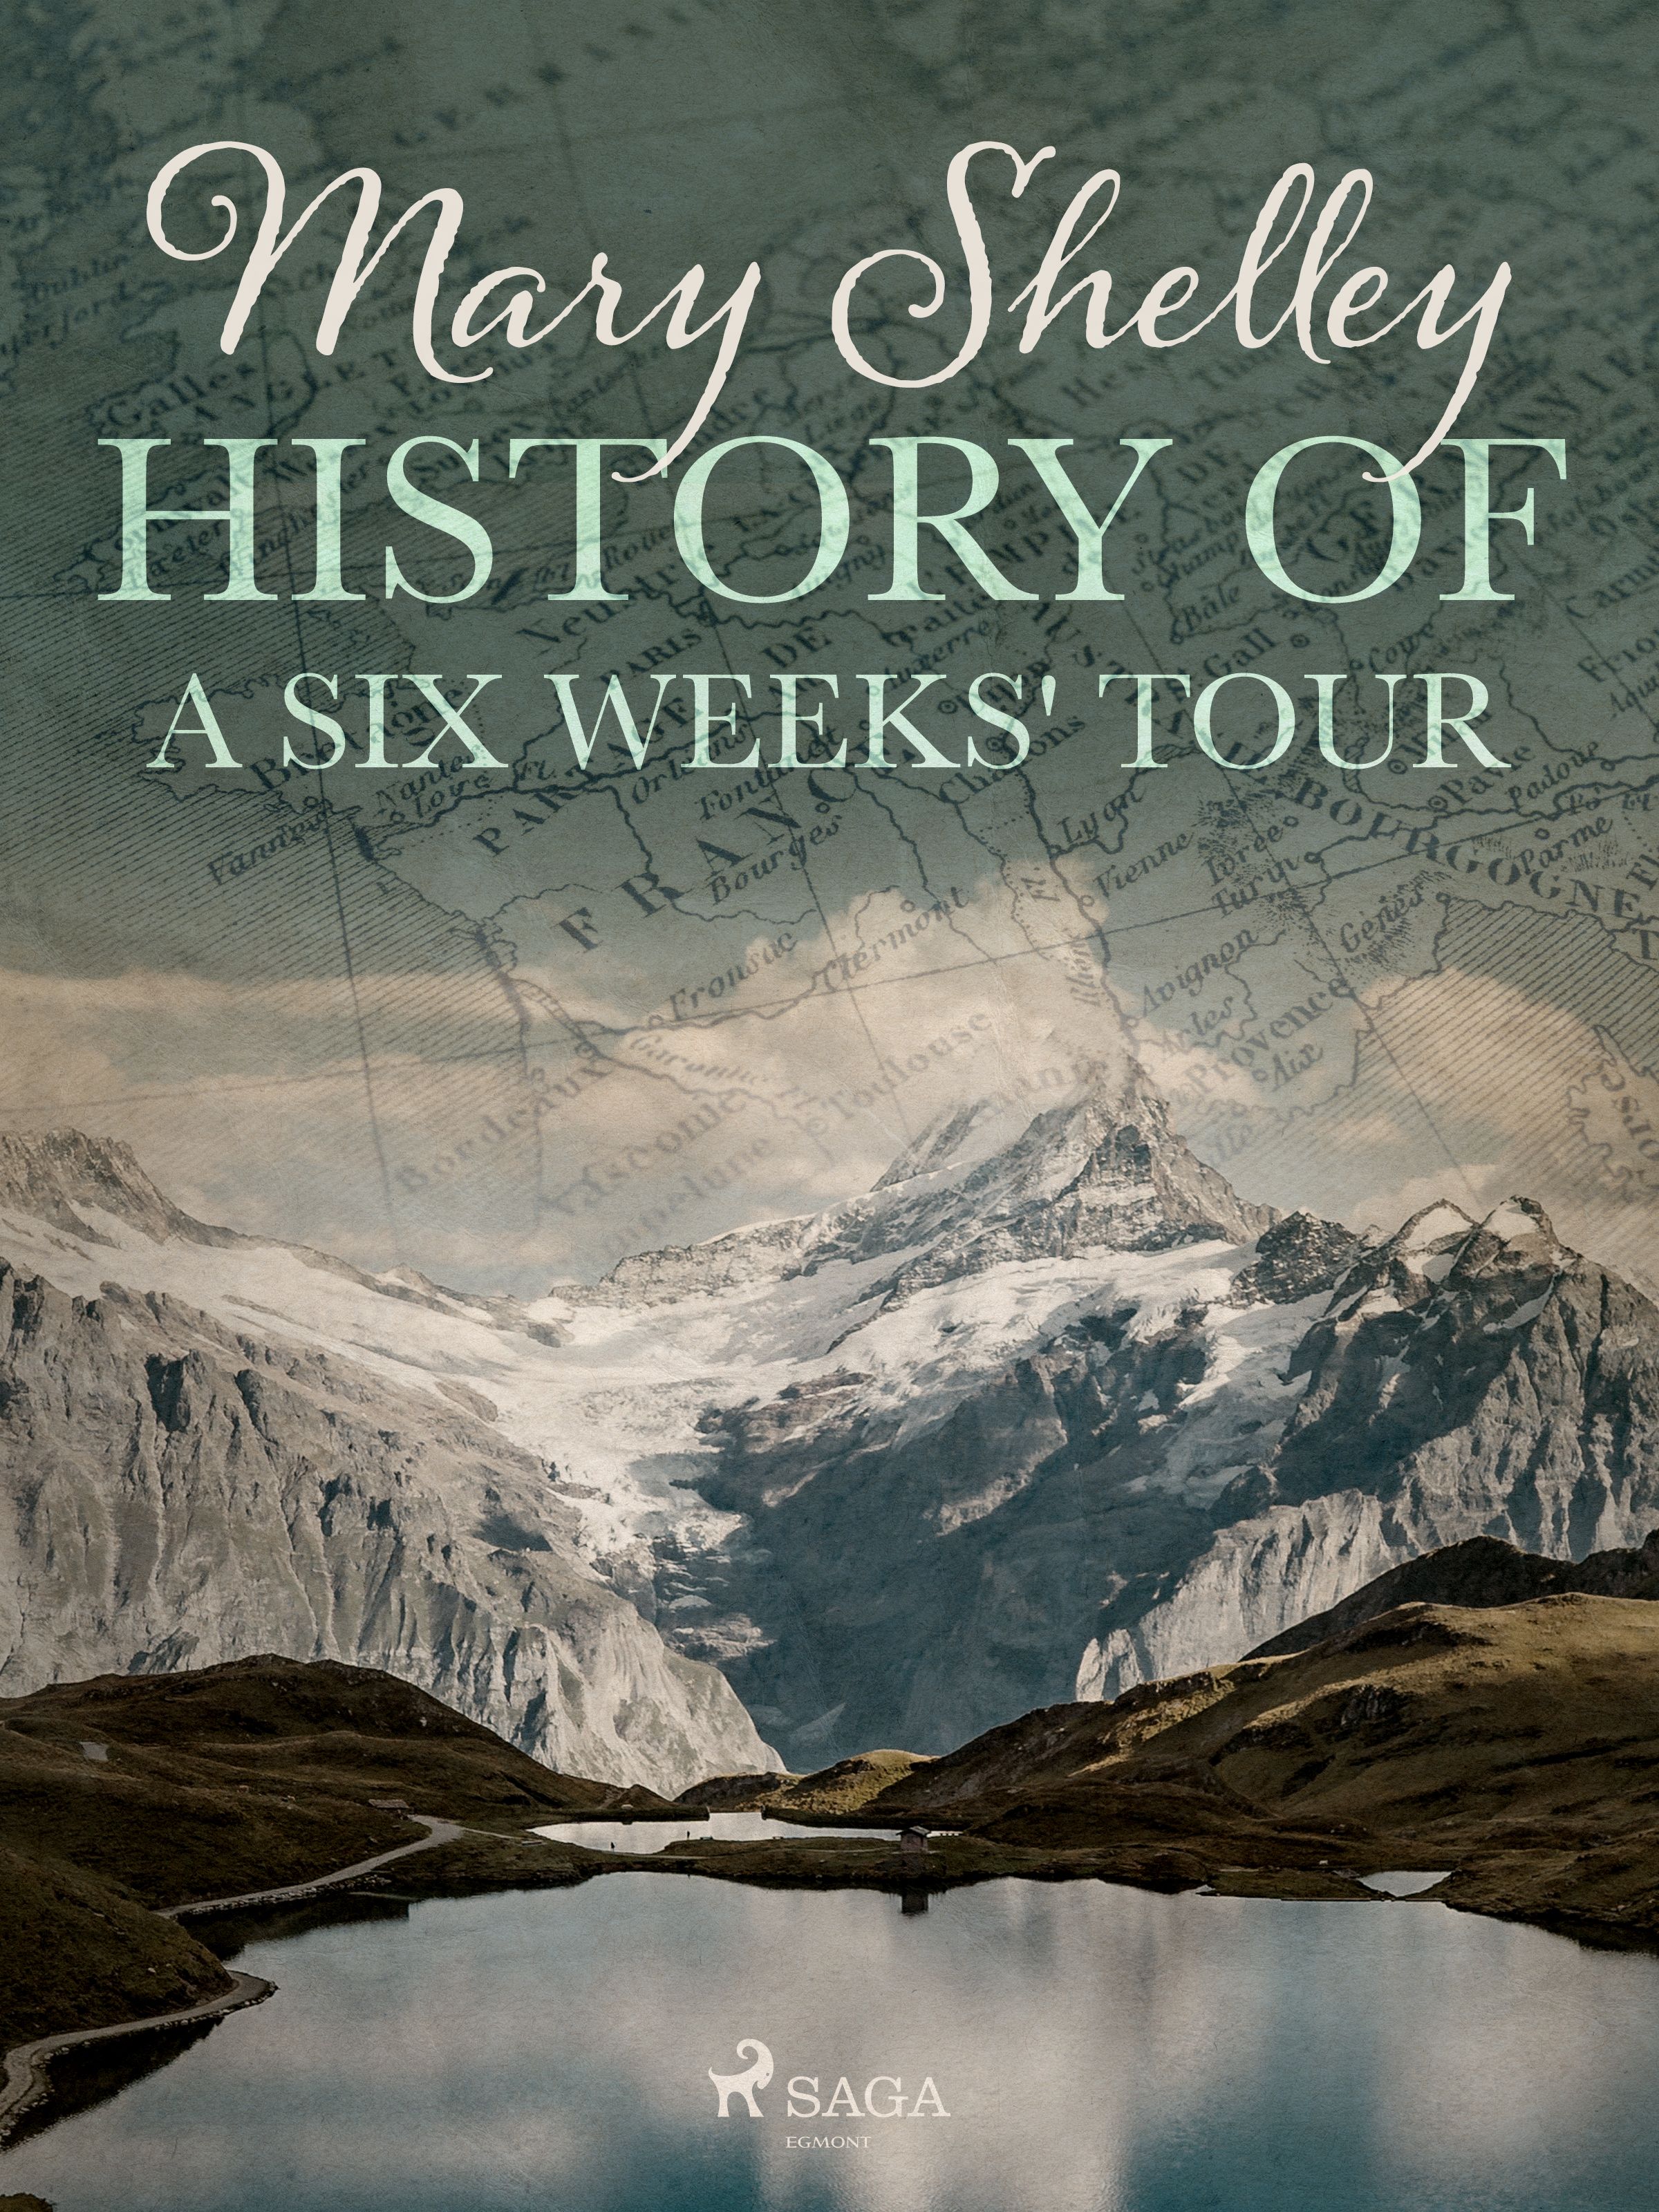 History of a Six Weeks' Tour, e-bog af Mary Shelley